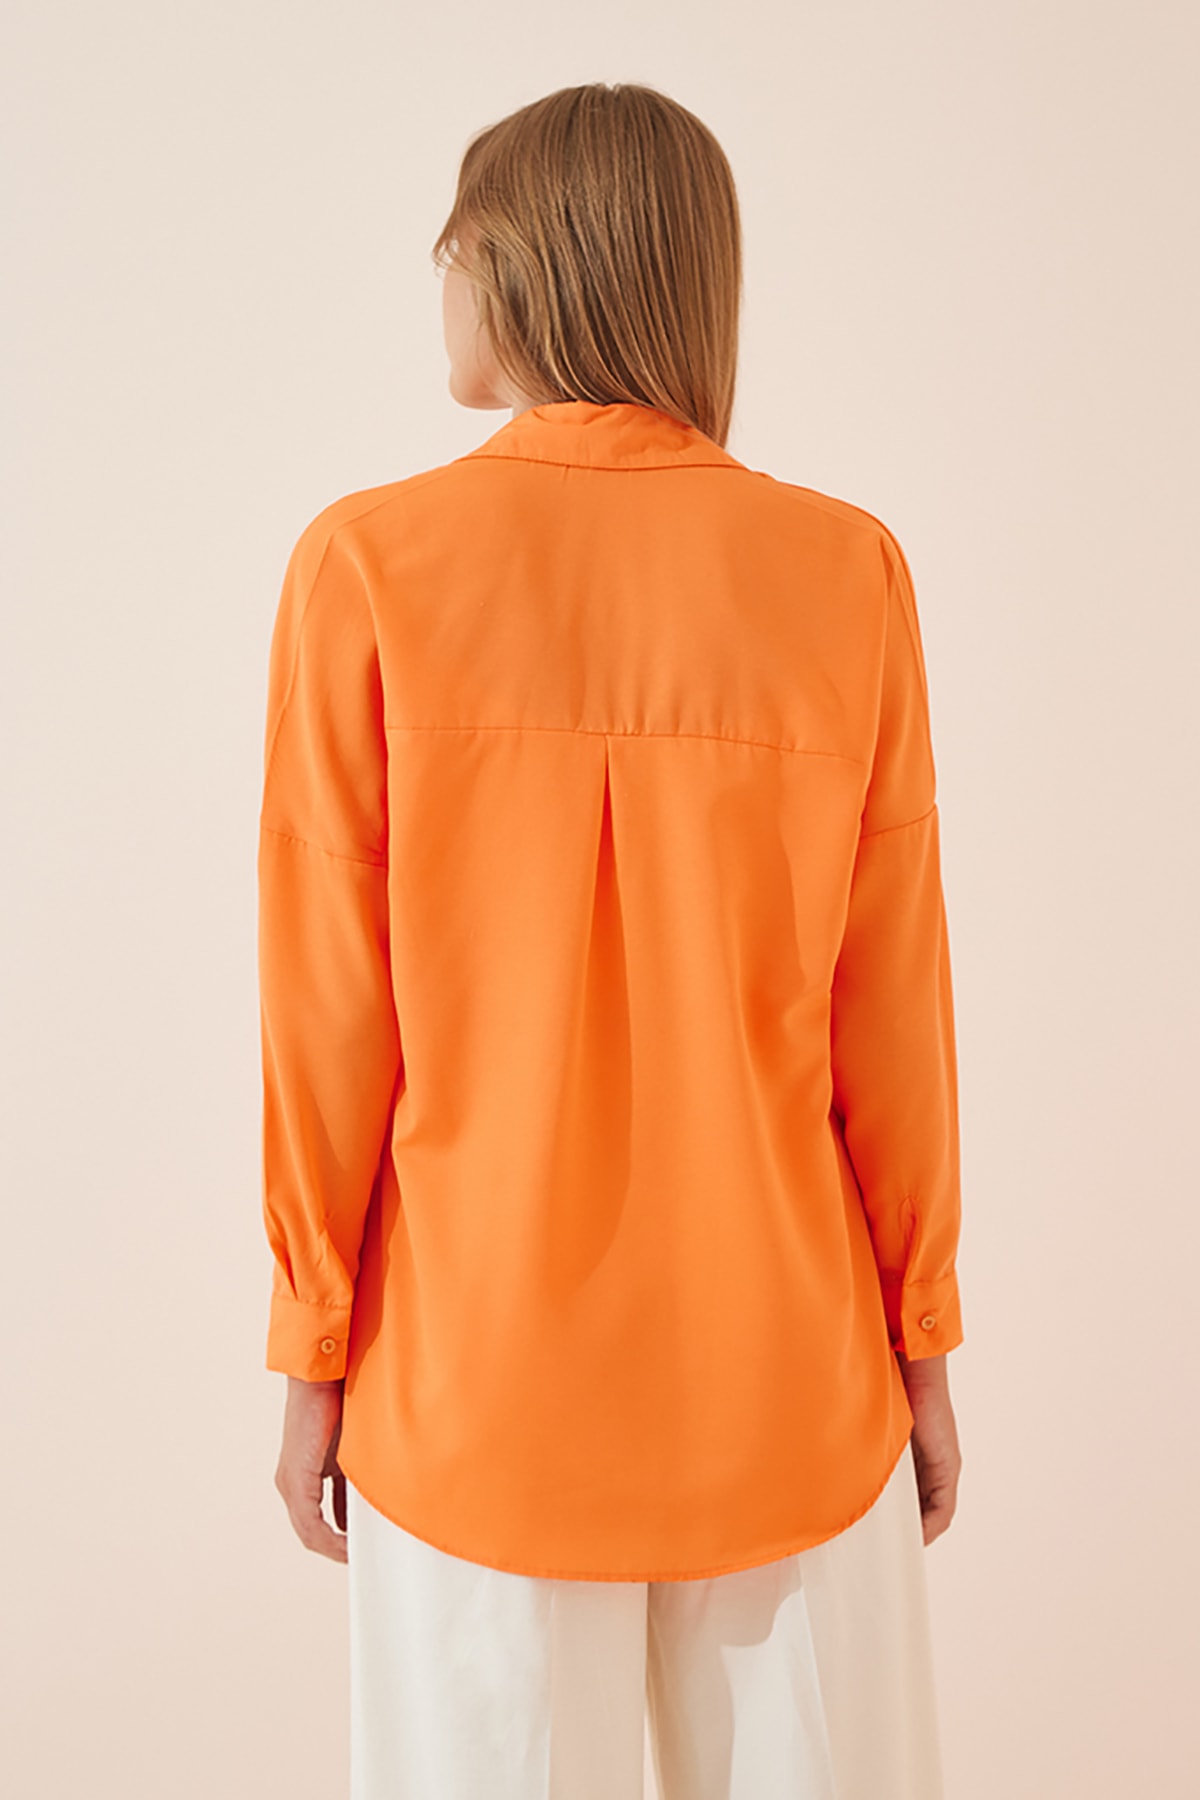 Kadın Oranj Oversize Uzun Basic Gömlek DD00842